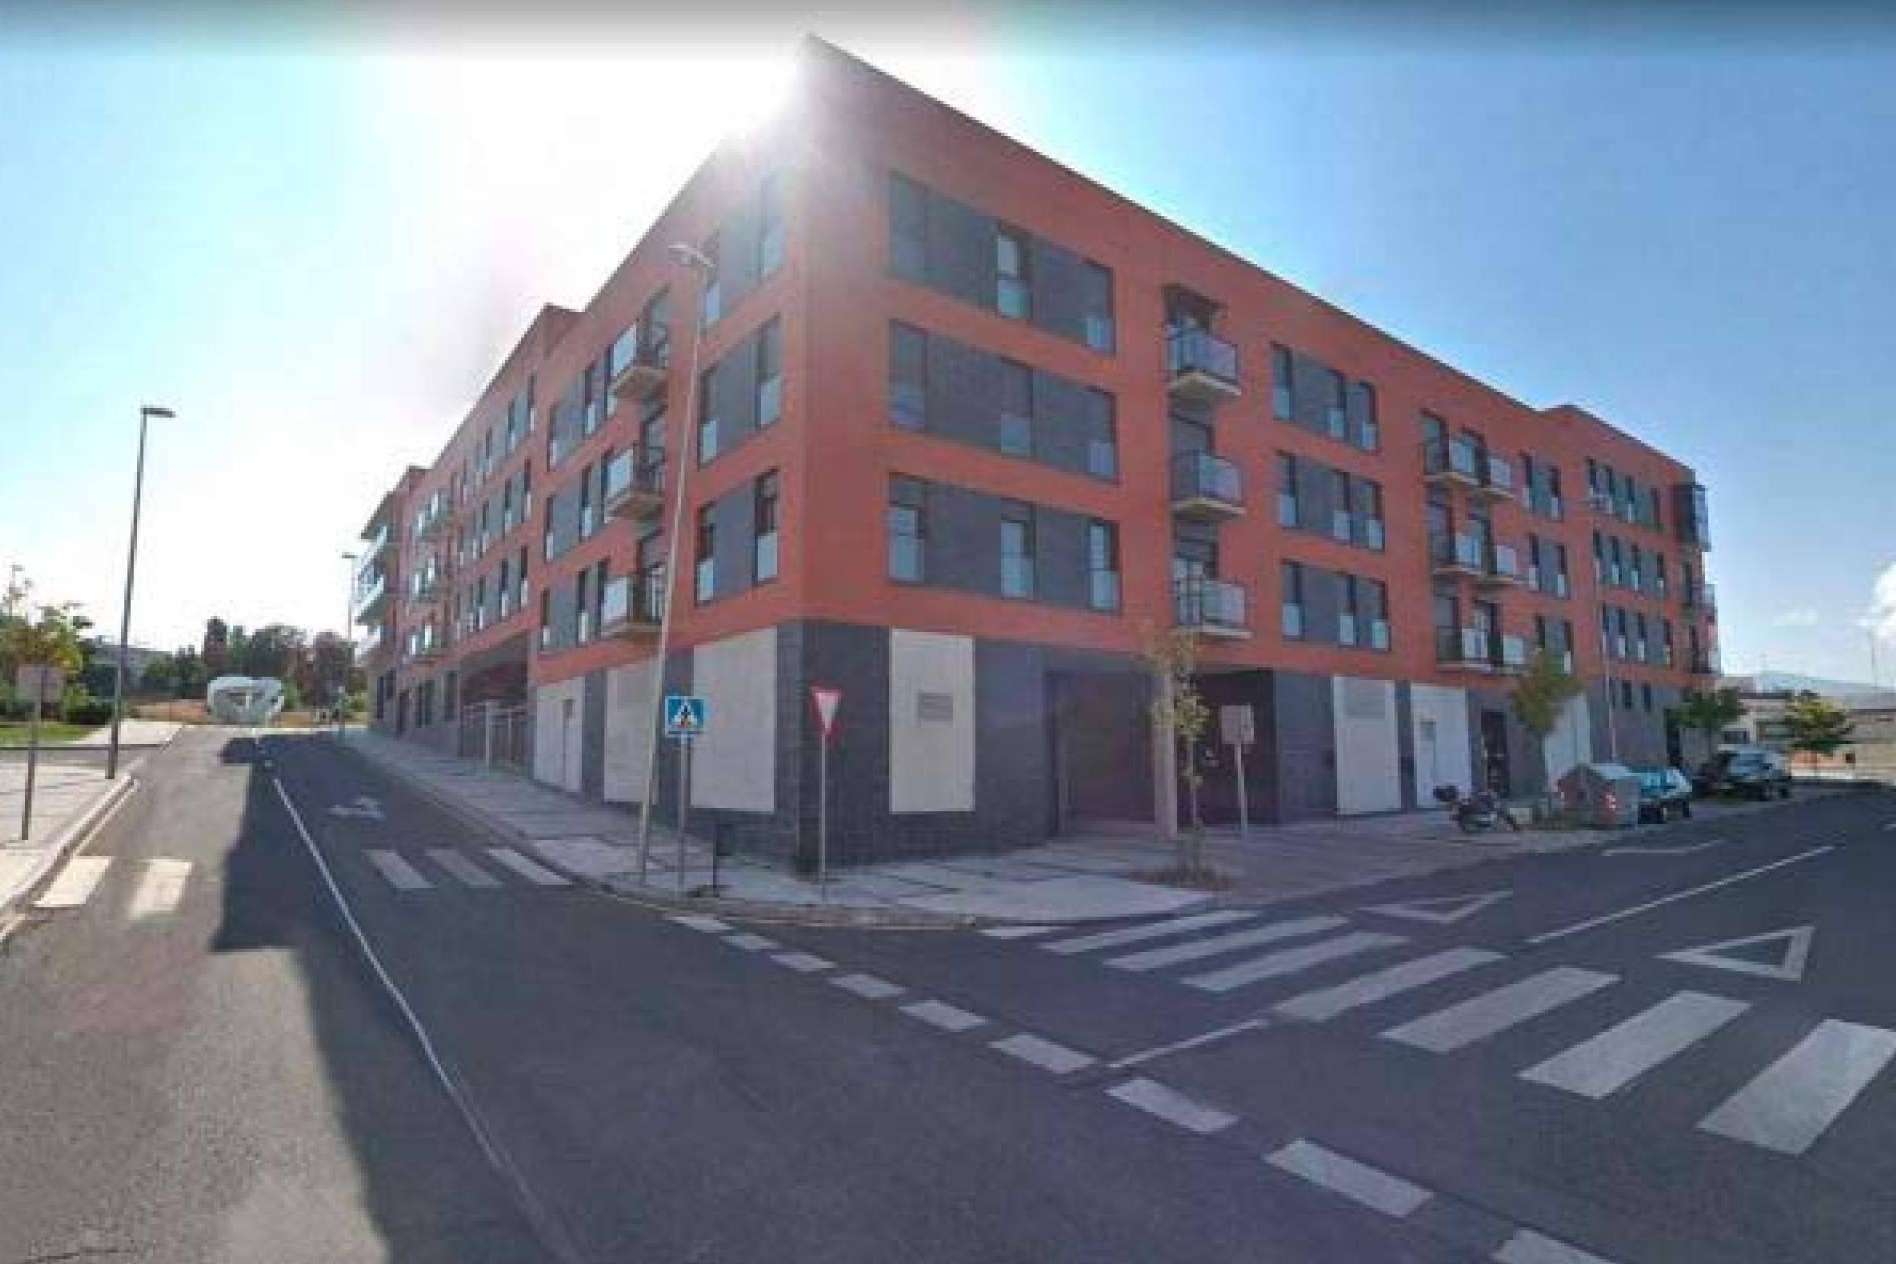 Eactivos.com subasta un conjunto de viviendas, garajes y trasteros a menos de 10 minutos del centro de Segovia